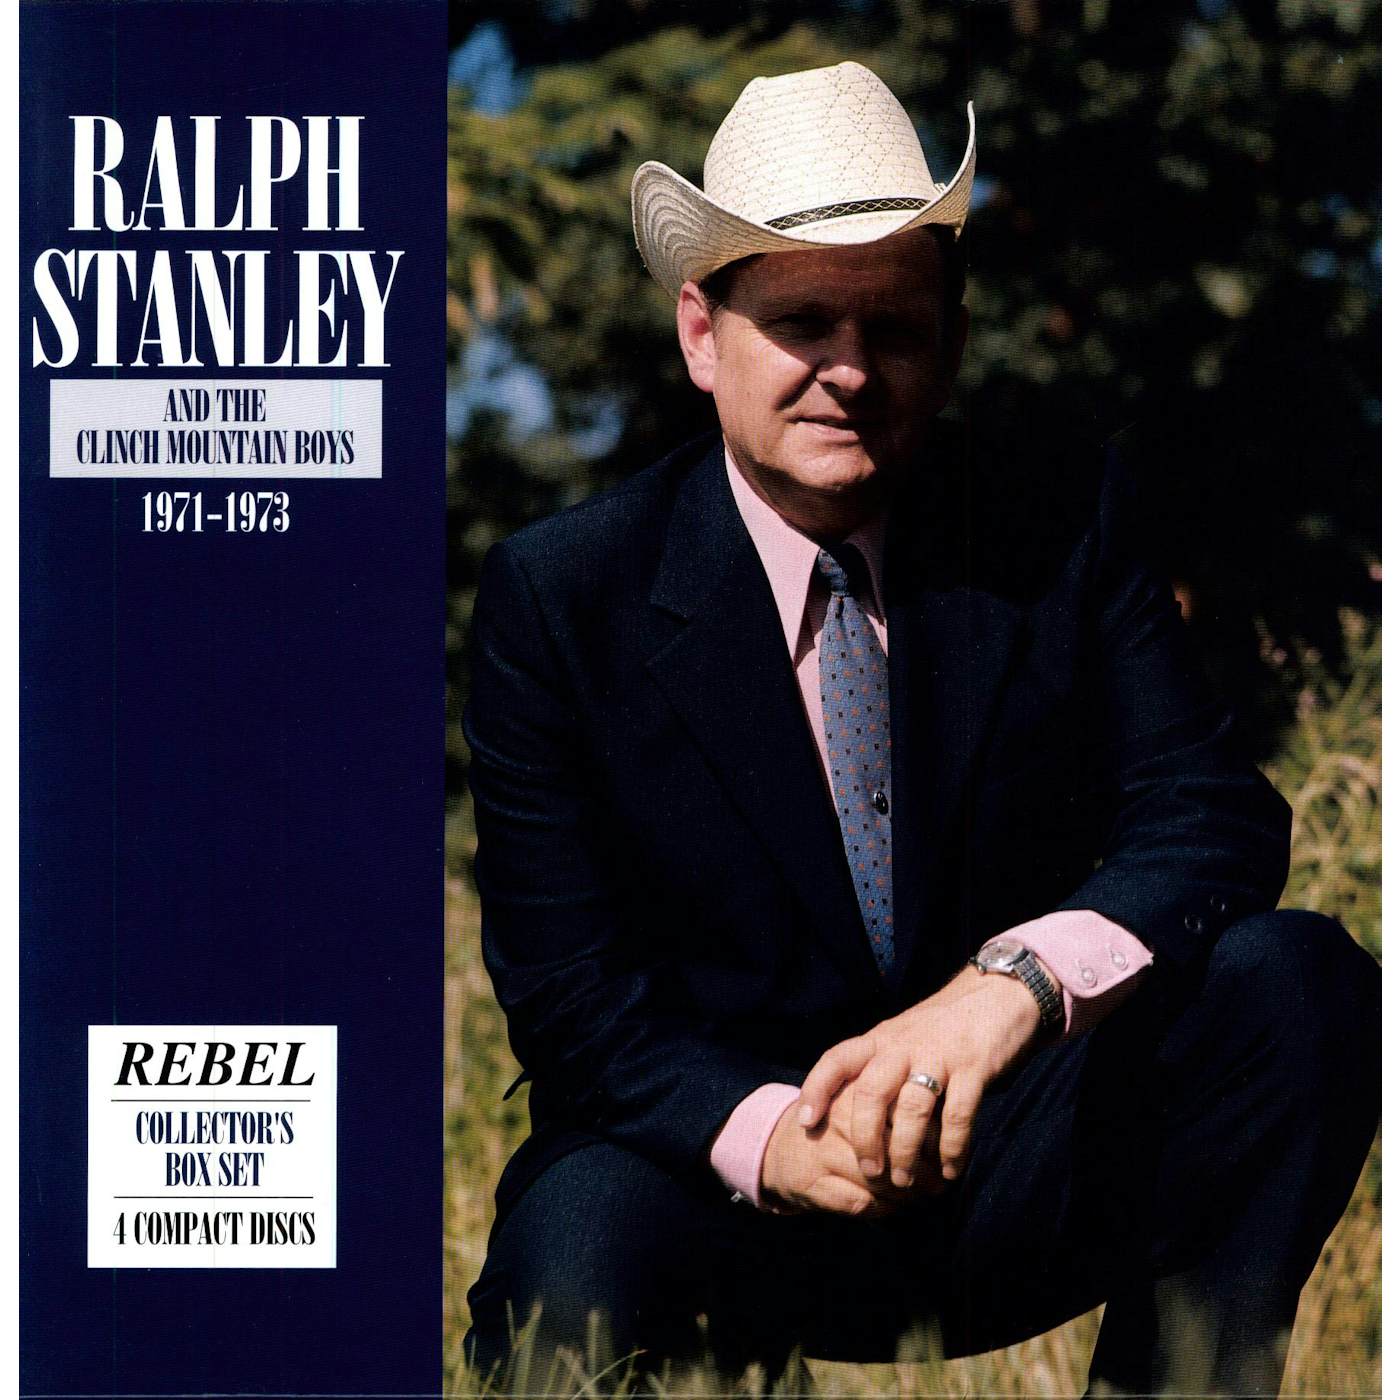 Ralph Stanley 1971-1973 CD